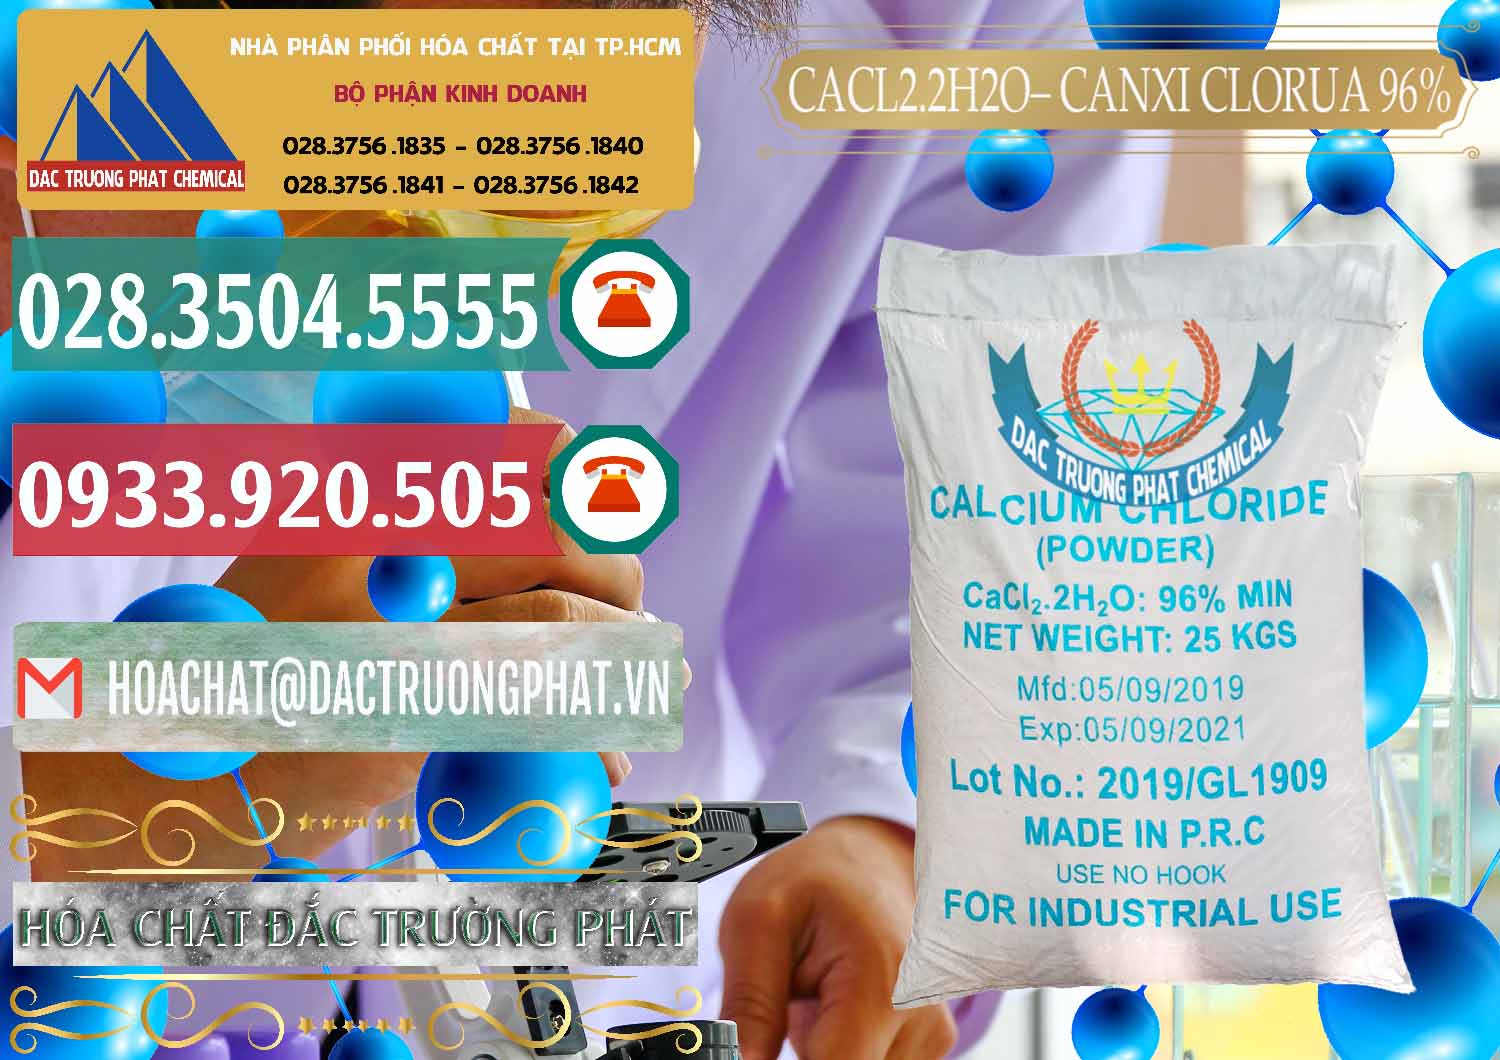 Đơn vị chuyên bán ( cung cấp ) CaCl2 – Canxi Clorua 96% Logo Kim Cương Trung Quốc China - 0040 - Cty cung cấp và nhập khẩu hóa chất tại TP.HCM - muabanhoachat.vn